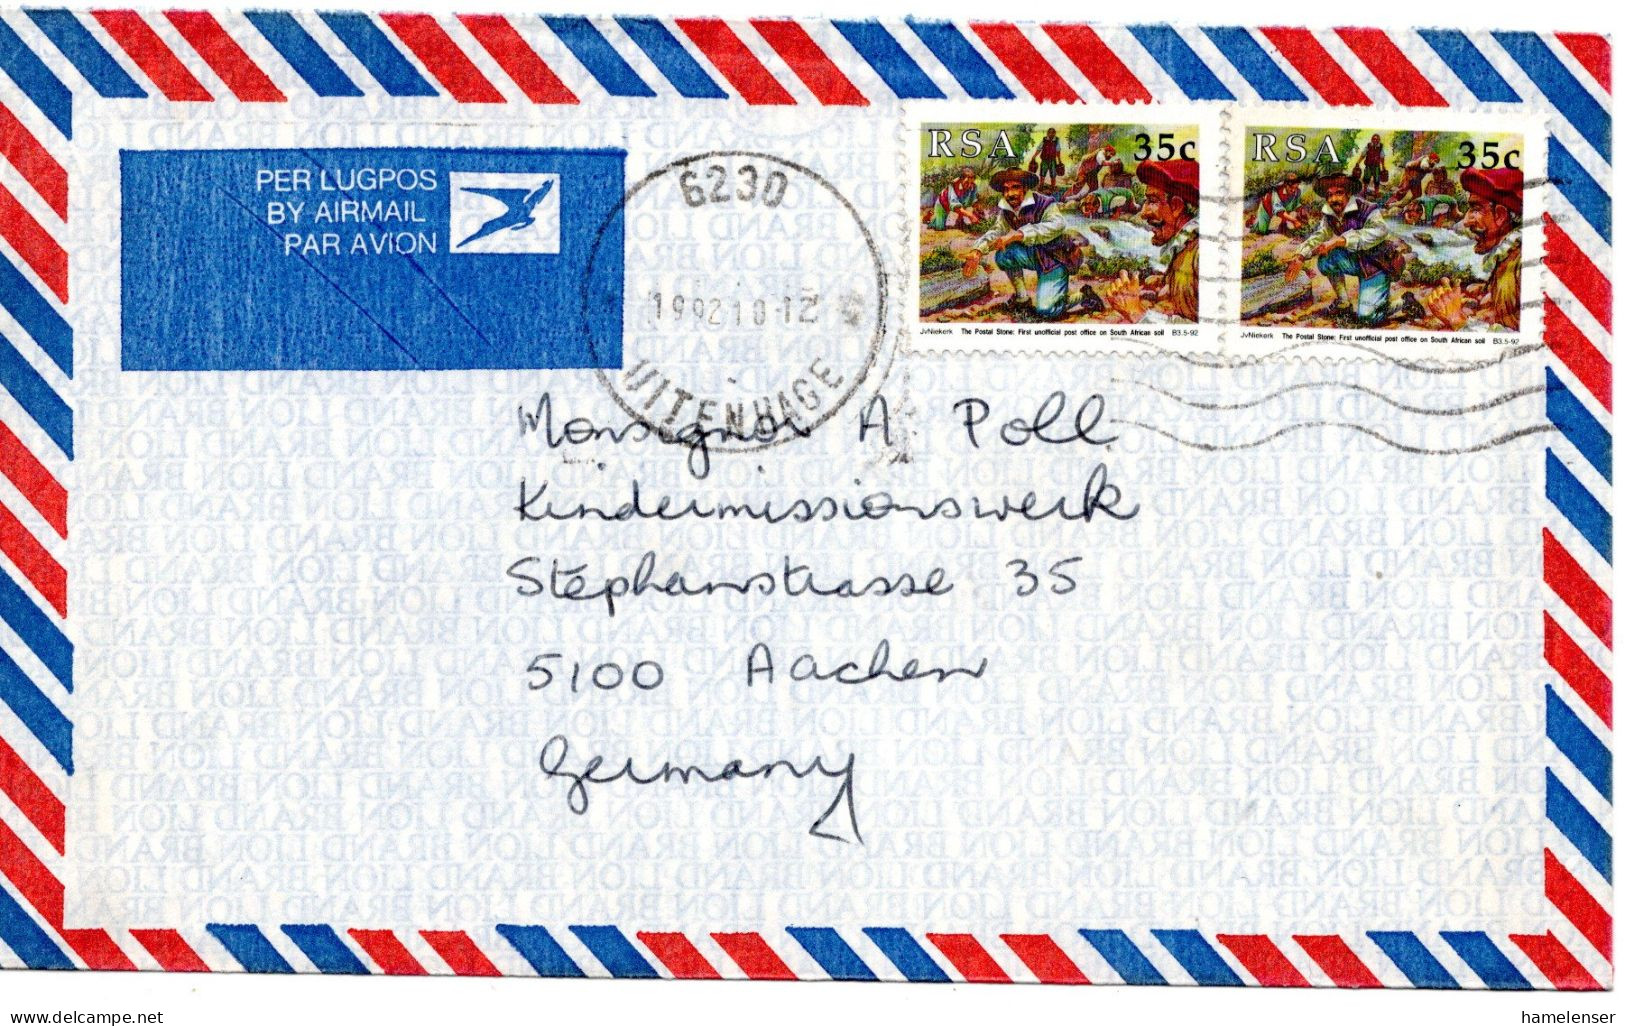 78877 - Südafrika - 1992 - 2@35c Poststeine A LpBf UITENHAGE -> Deutschland - Post